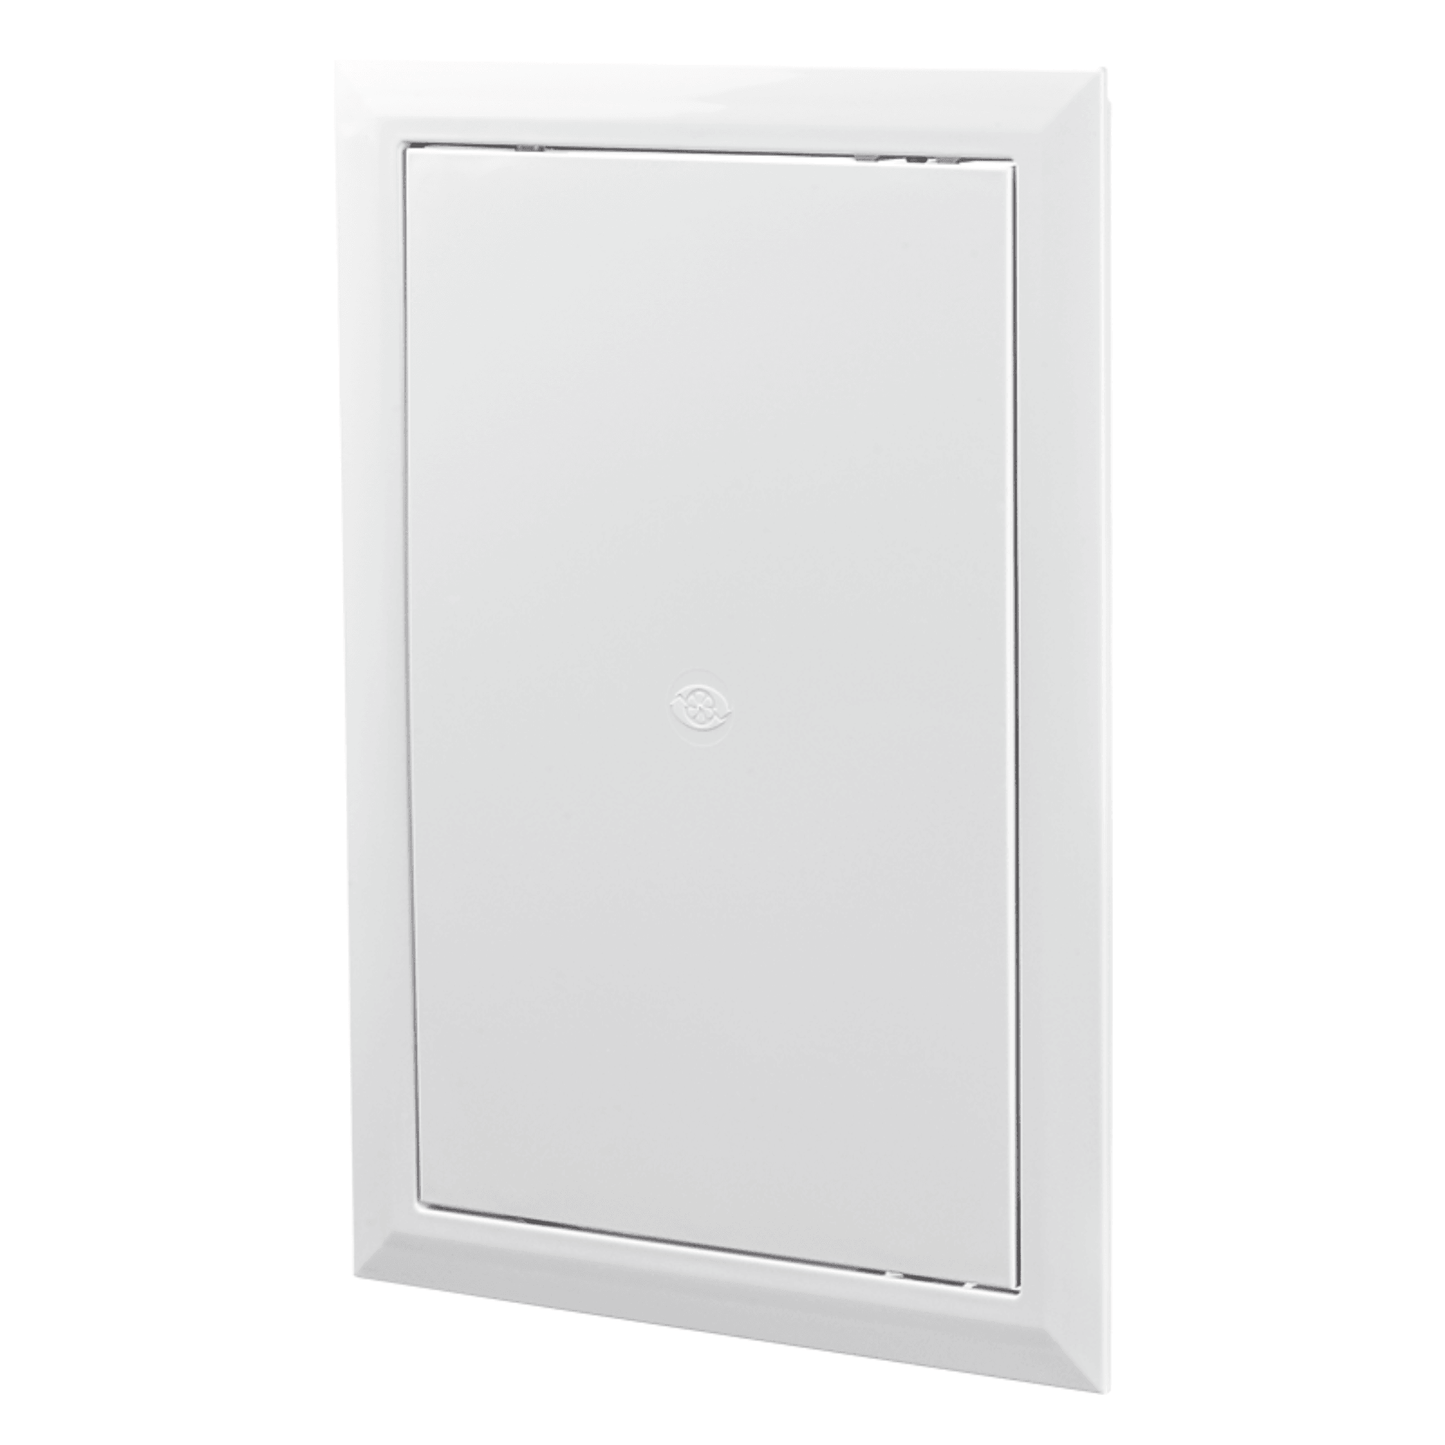 Vents D Series 6 3/4′′ x 10 3/4′′ Plastic Access Door